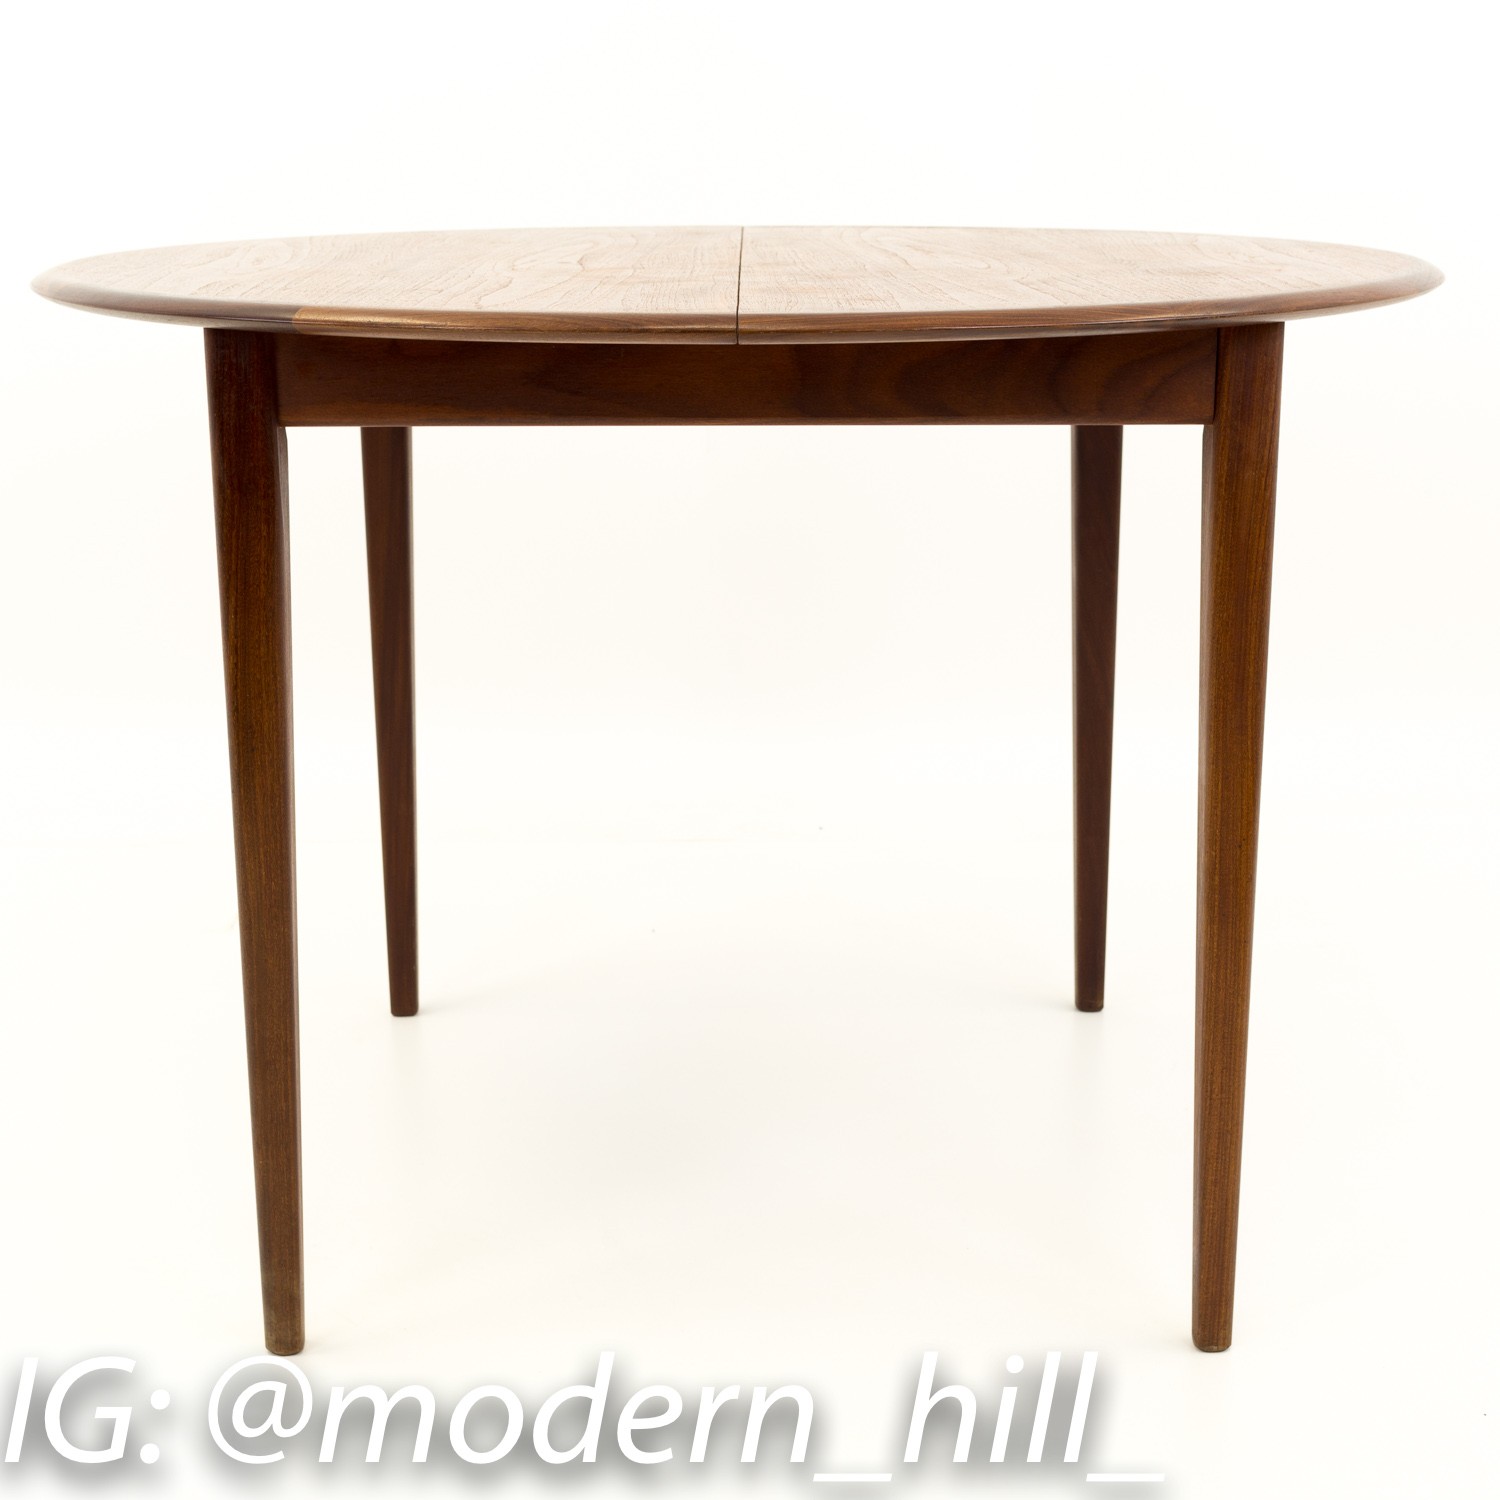 R Huber Kai Kristiansen Style Mid Century Modern Round Oval Teak Dining Table